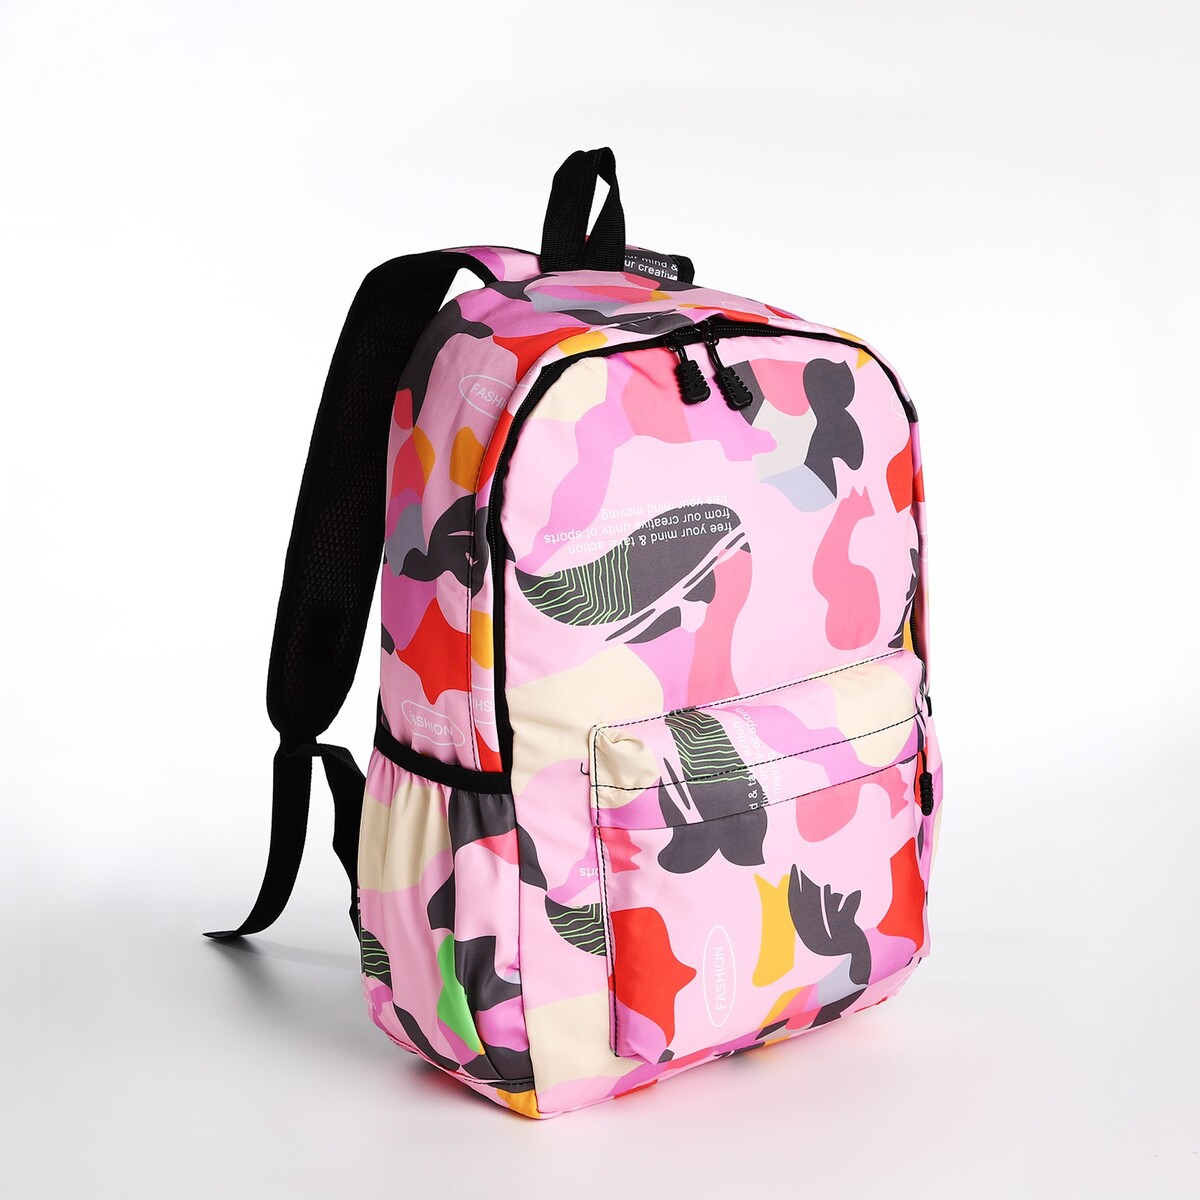 Рюкзак молодежный из текстиля, 3 кармана, цвет розовый рюкзак молодежный из текстиля на молнии 2 кармана розовый